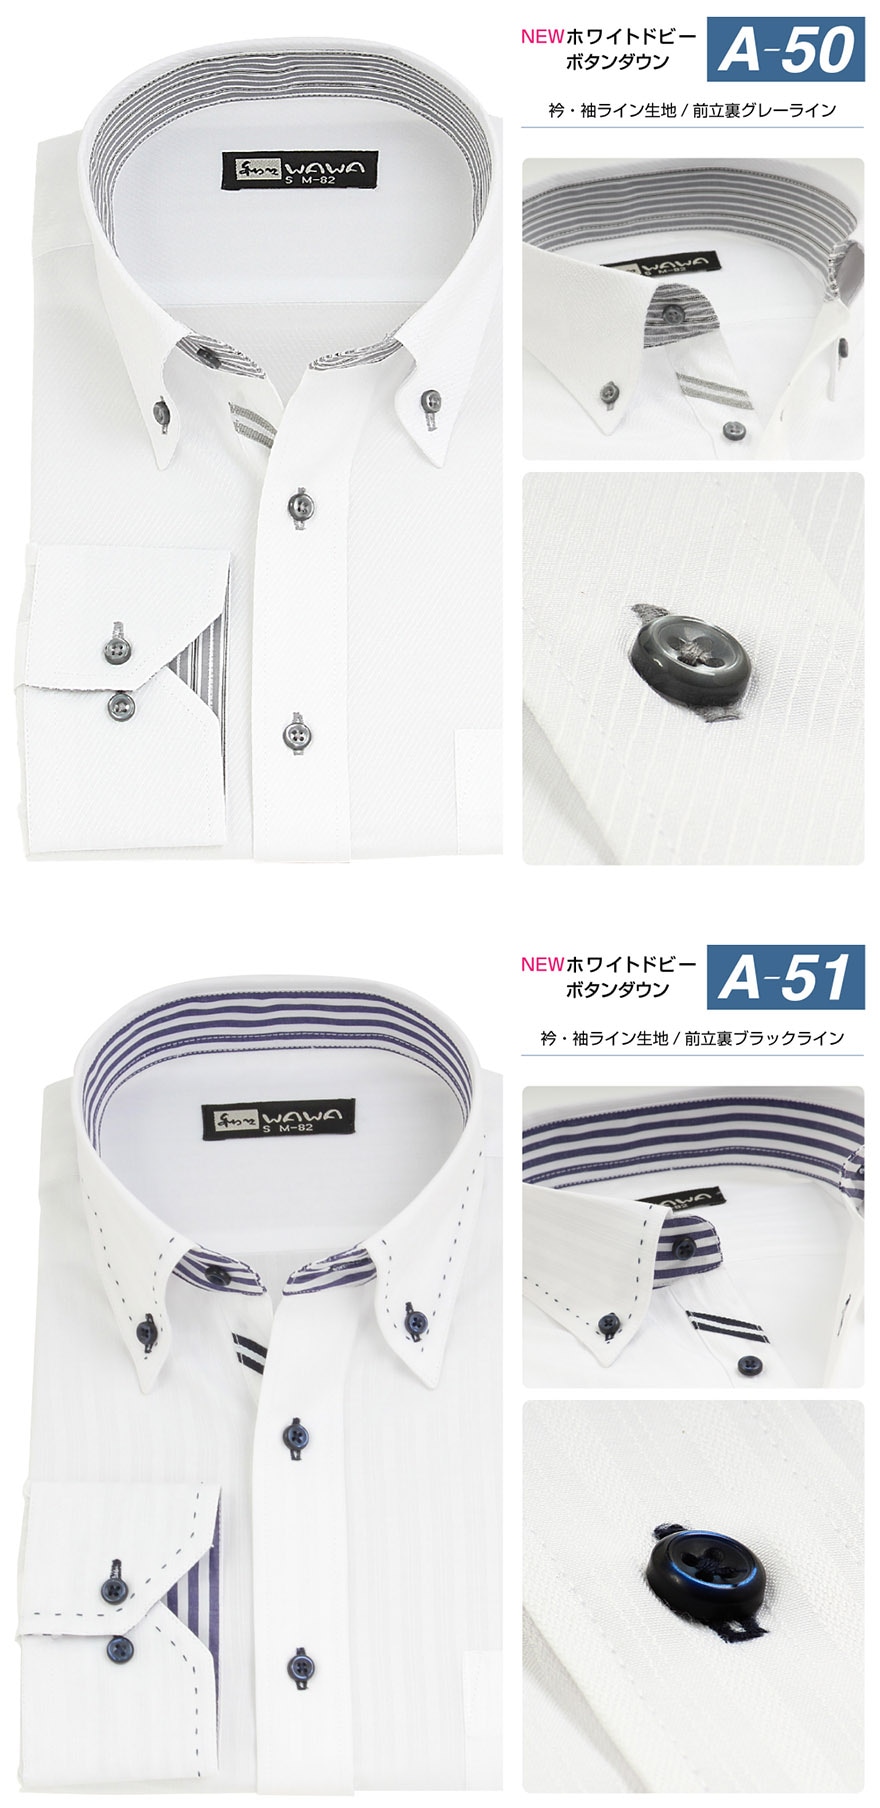 長袖 白ドビー メンズ ワイシャツ ホリゾンタルカラー ボタンダウン スリム 形態安定 標準体 クールビズ カッターシャツ 10種類から選択出来る  Aシリーズ ビジネス カジュアル-WAWAJAPAN